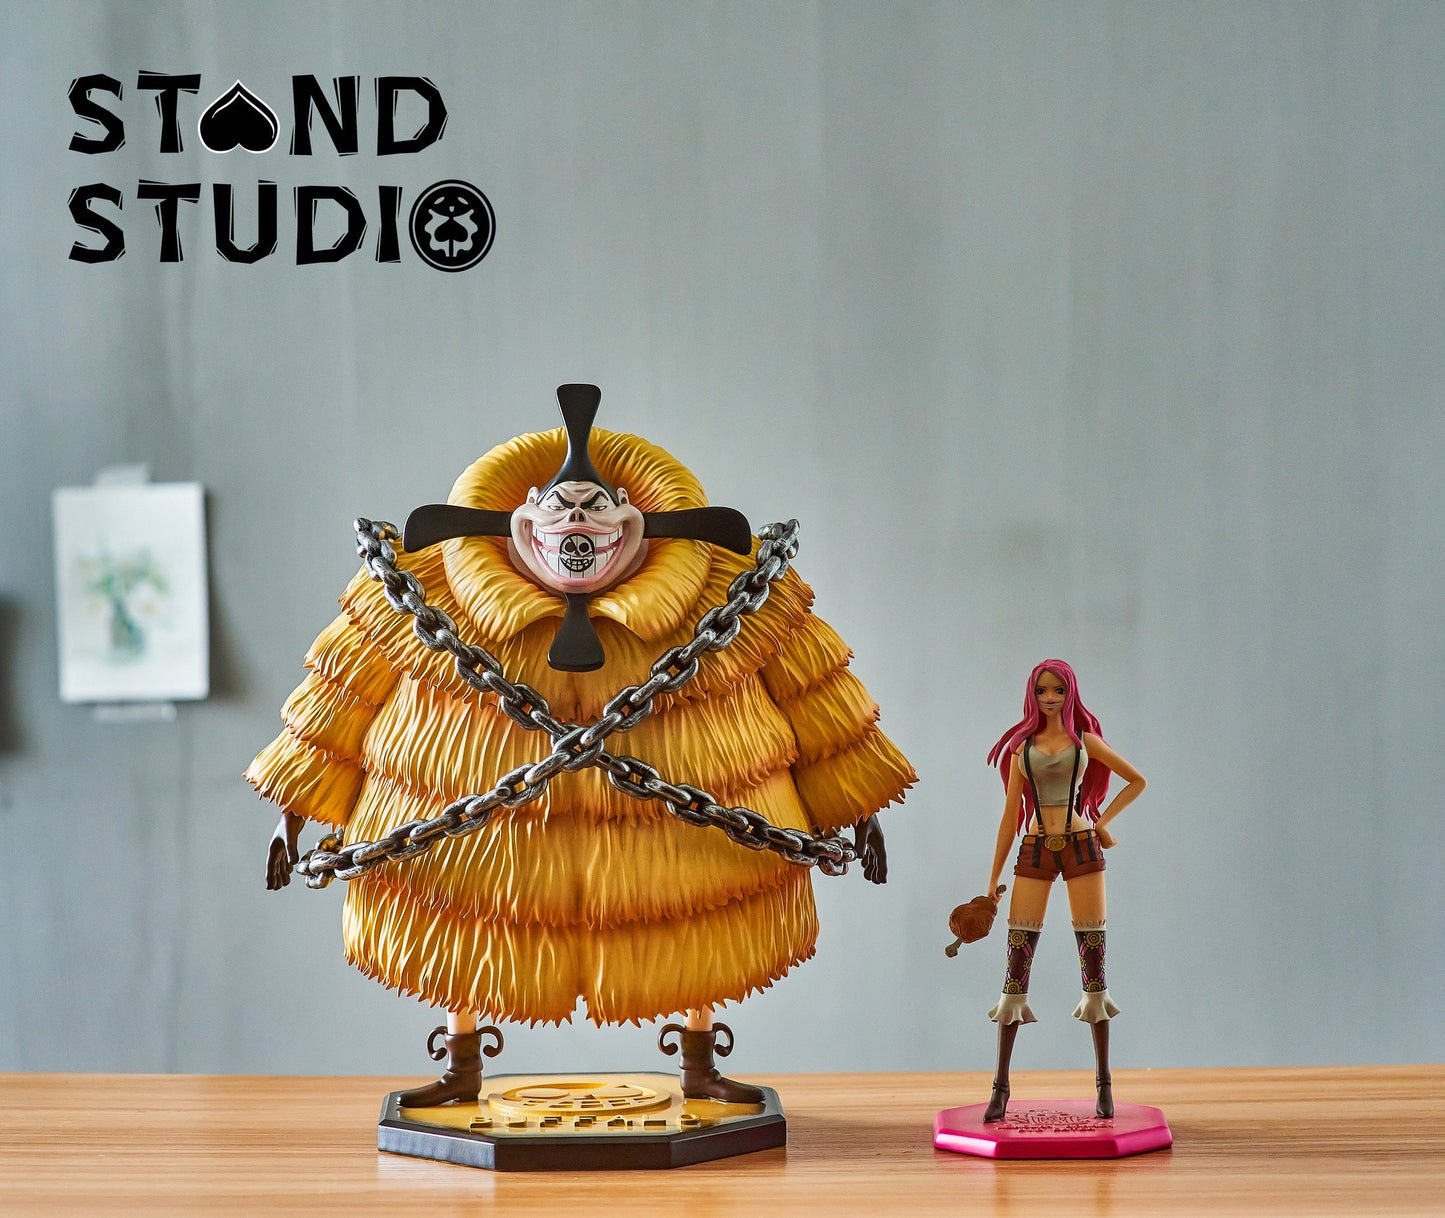 Stand Studio - Donquixote Pirates Buffalo [PRE-ORDER CLOSED]